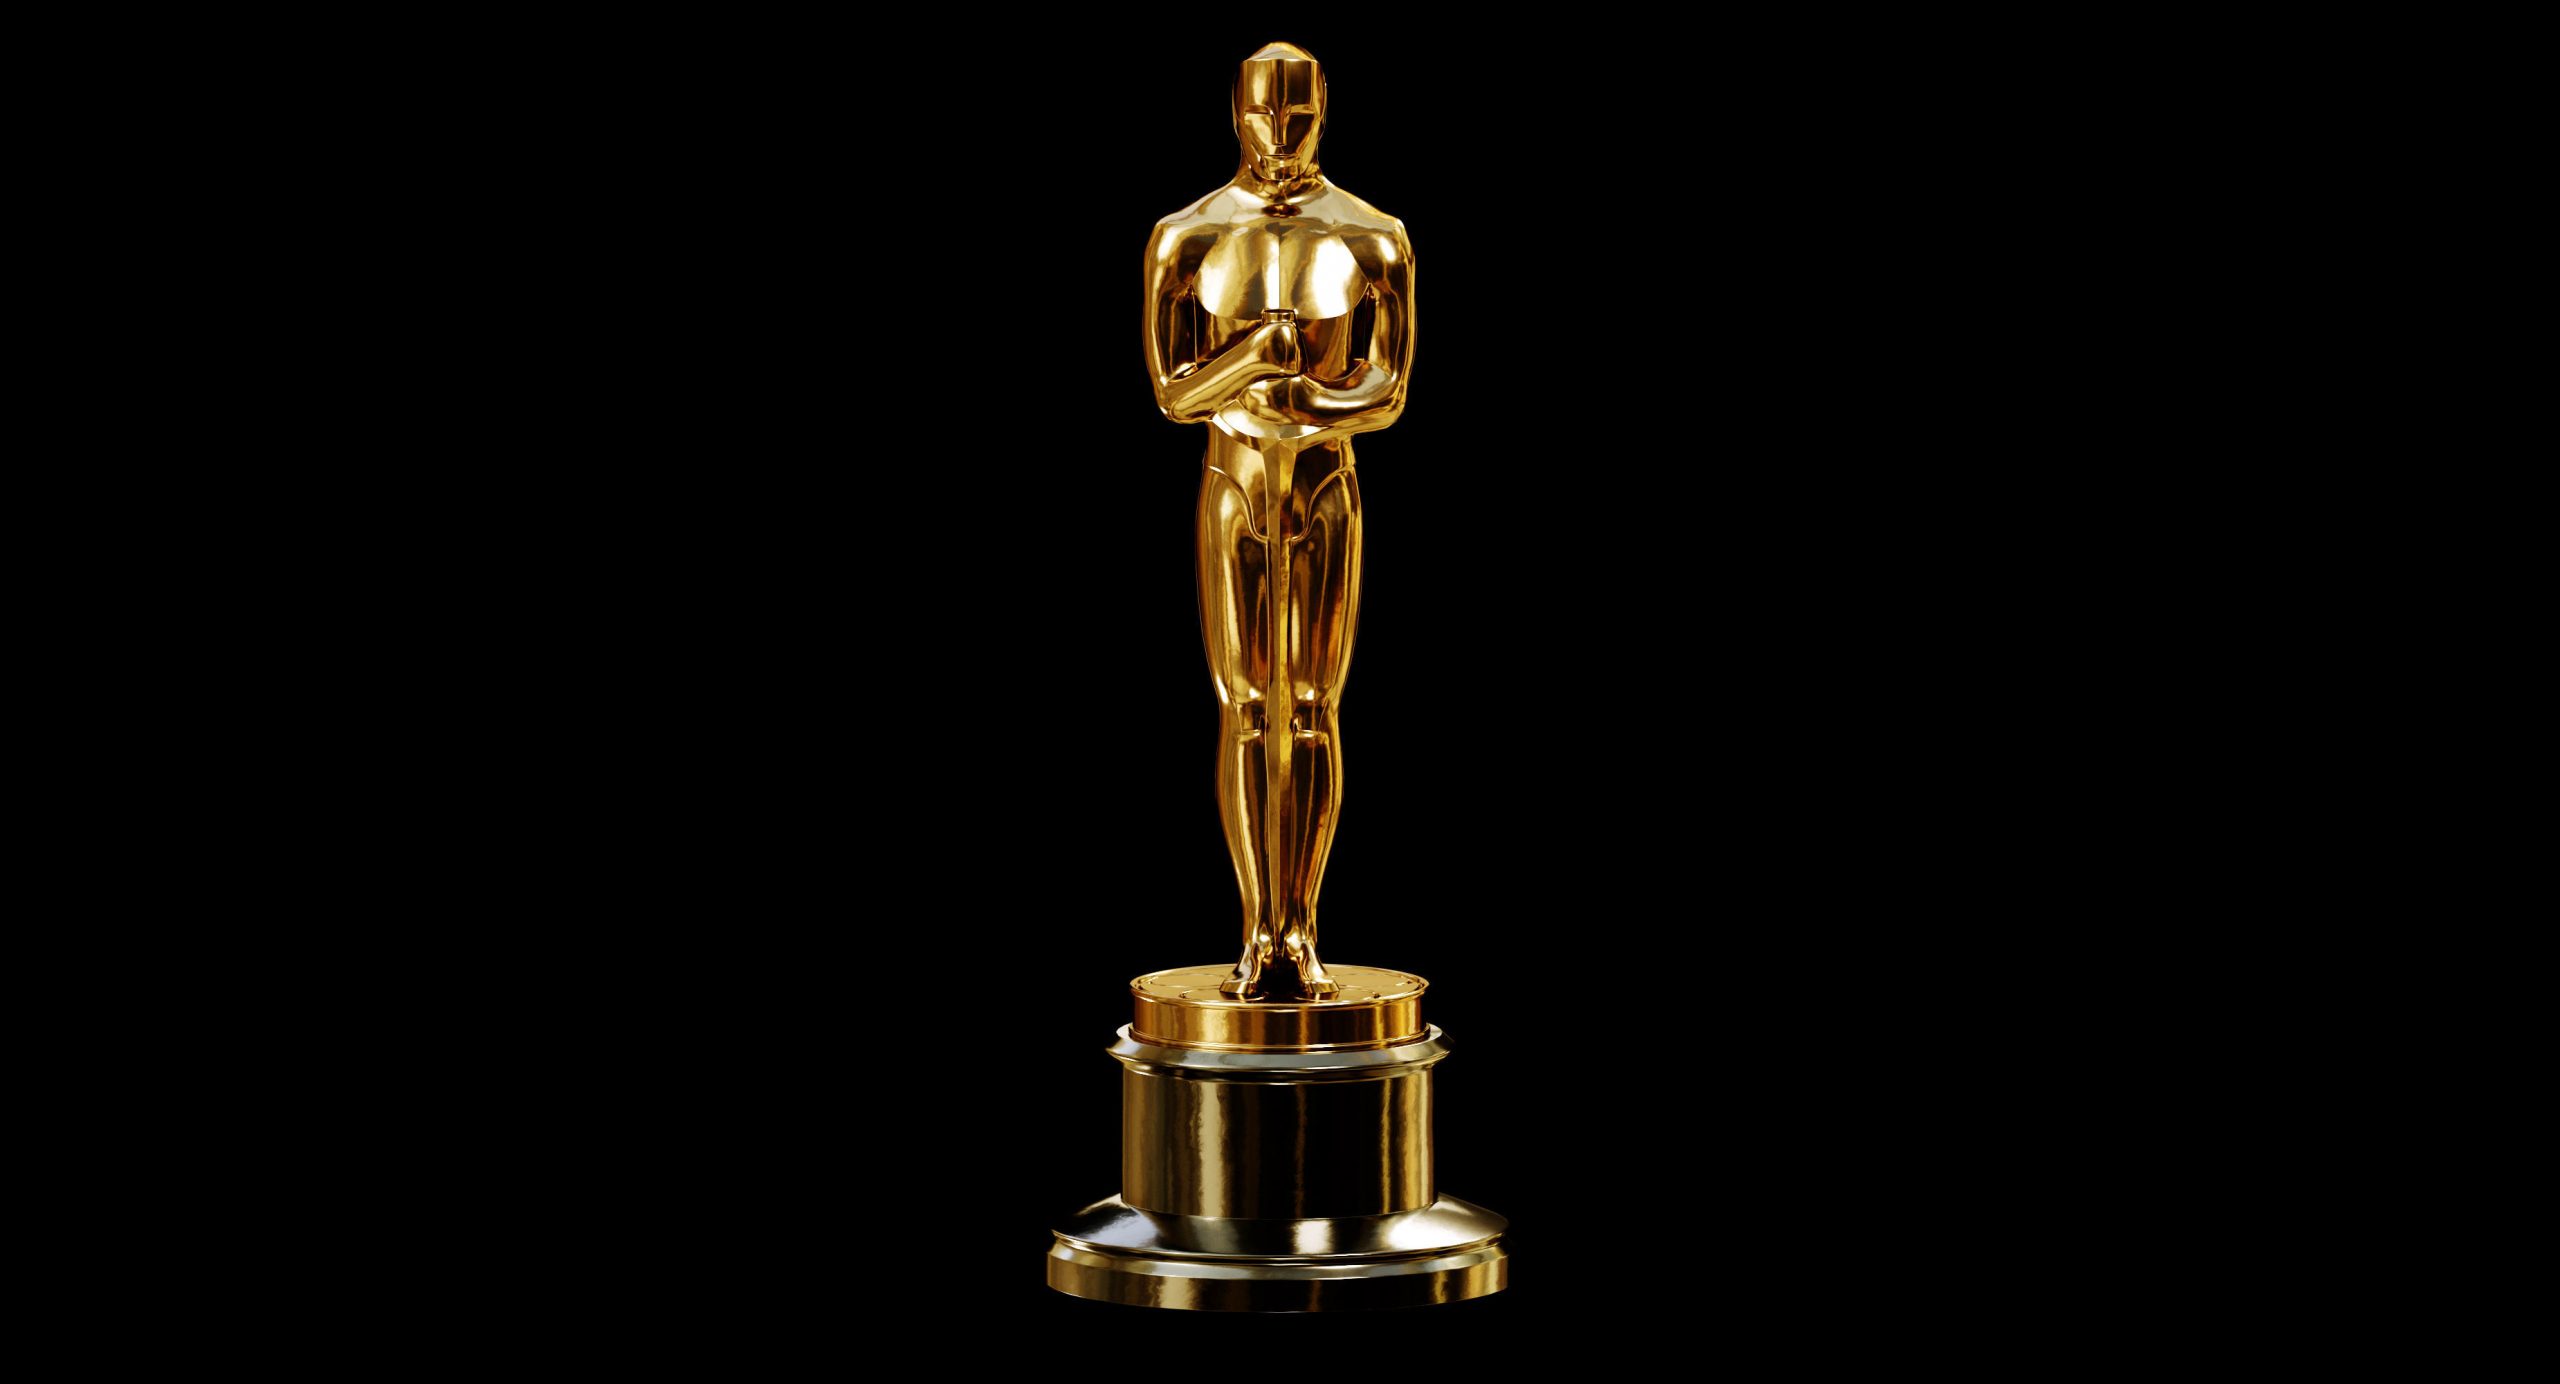 De ce premiile Oscar se numesc astfel? Cine a fost, de fapt, Oscar?